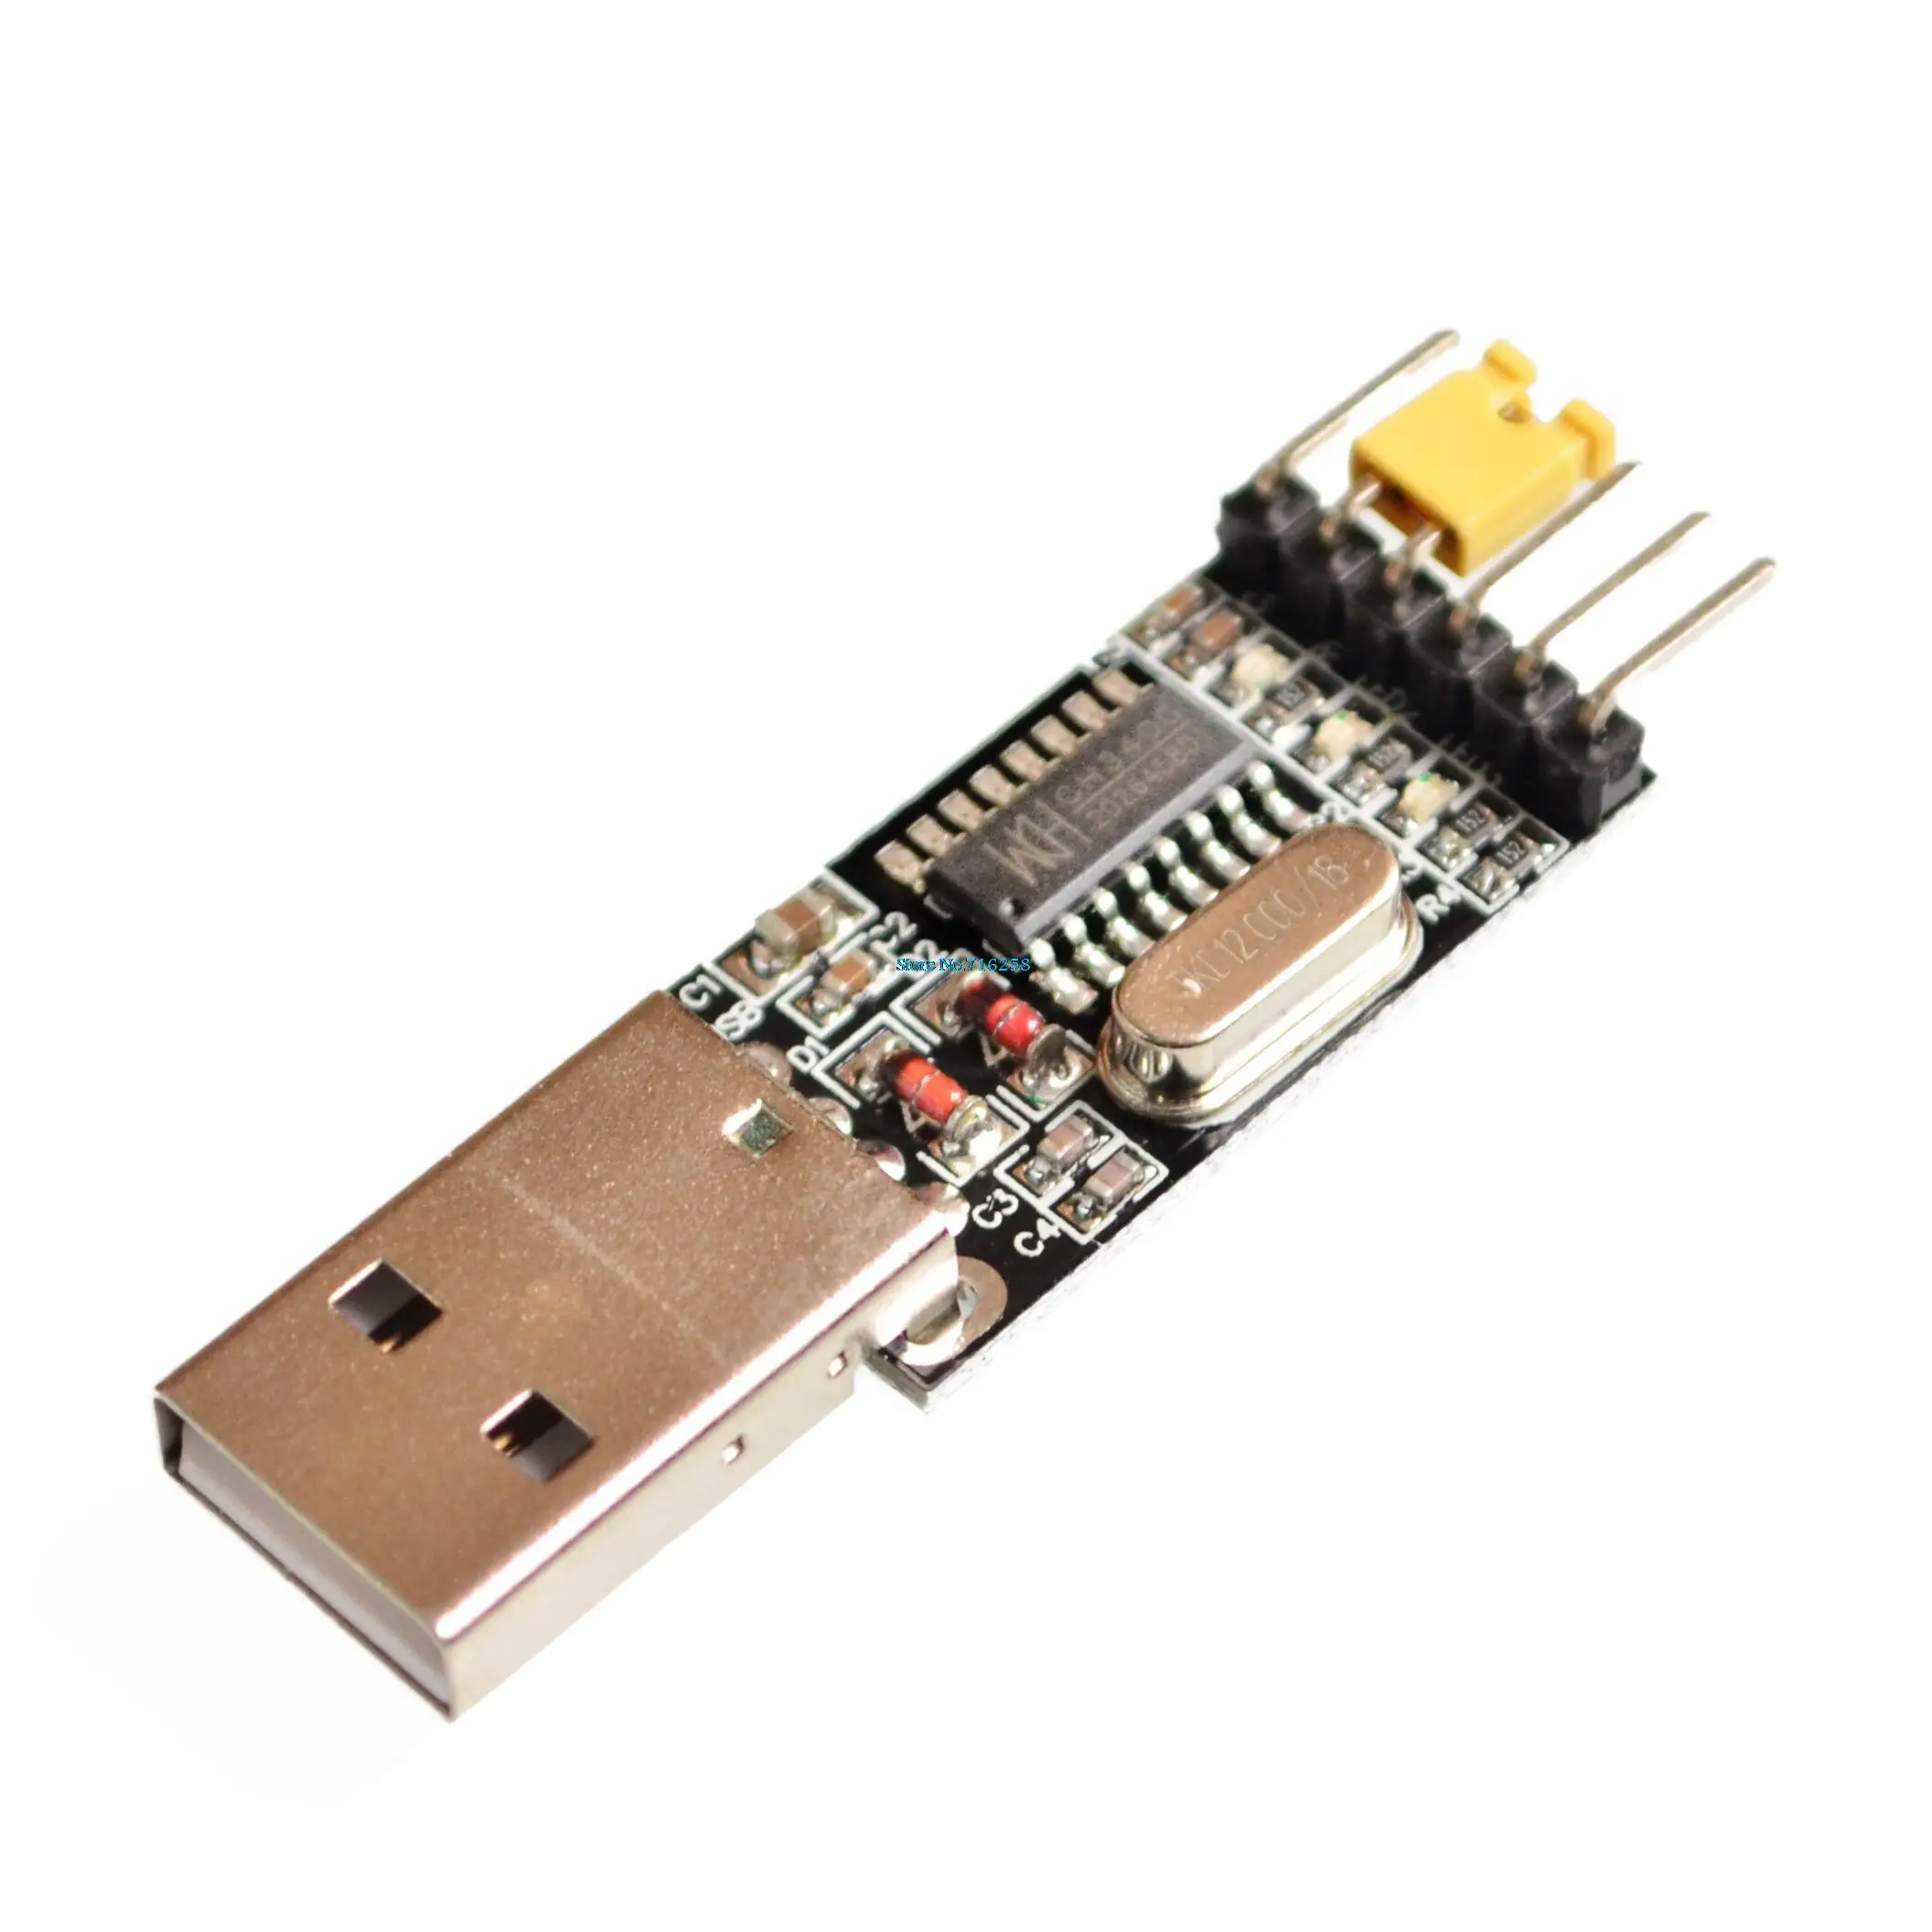 CH340 модуль USB к ttl CH340G обновление скачать небольшой провод щетка пластина STC микроконтроллер Плата USB к последовательному